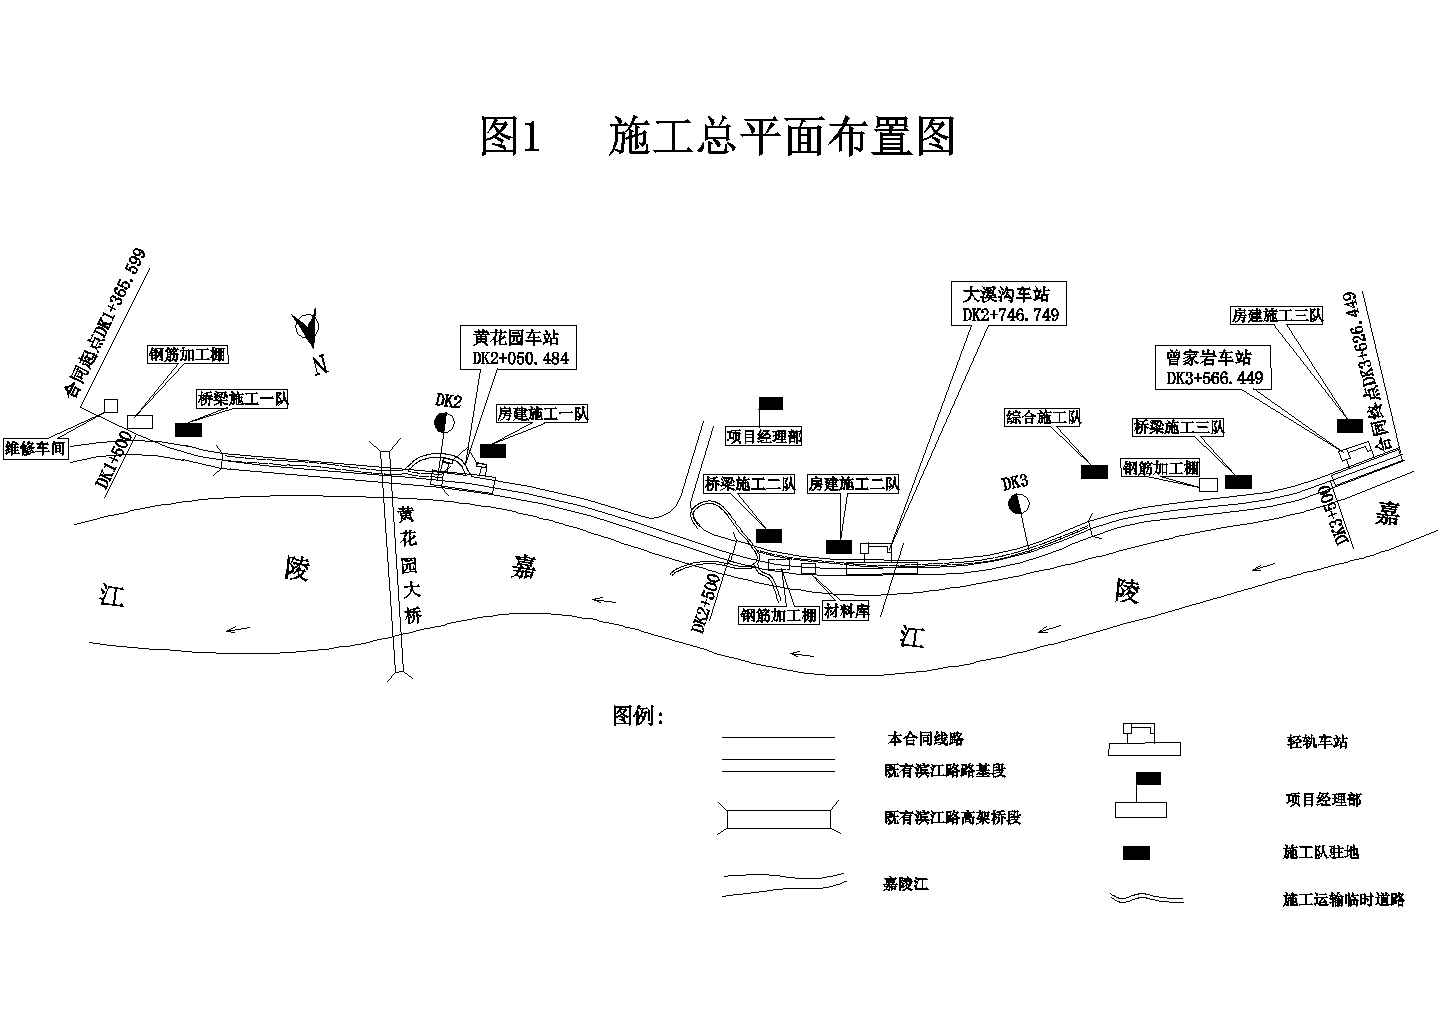 重庆市轻轨较新线某高架车站结构及区间桥梁工程施工组织设计